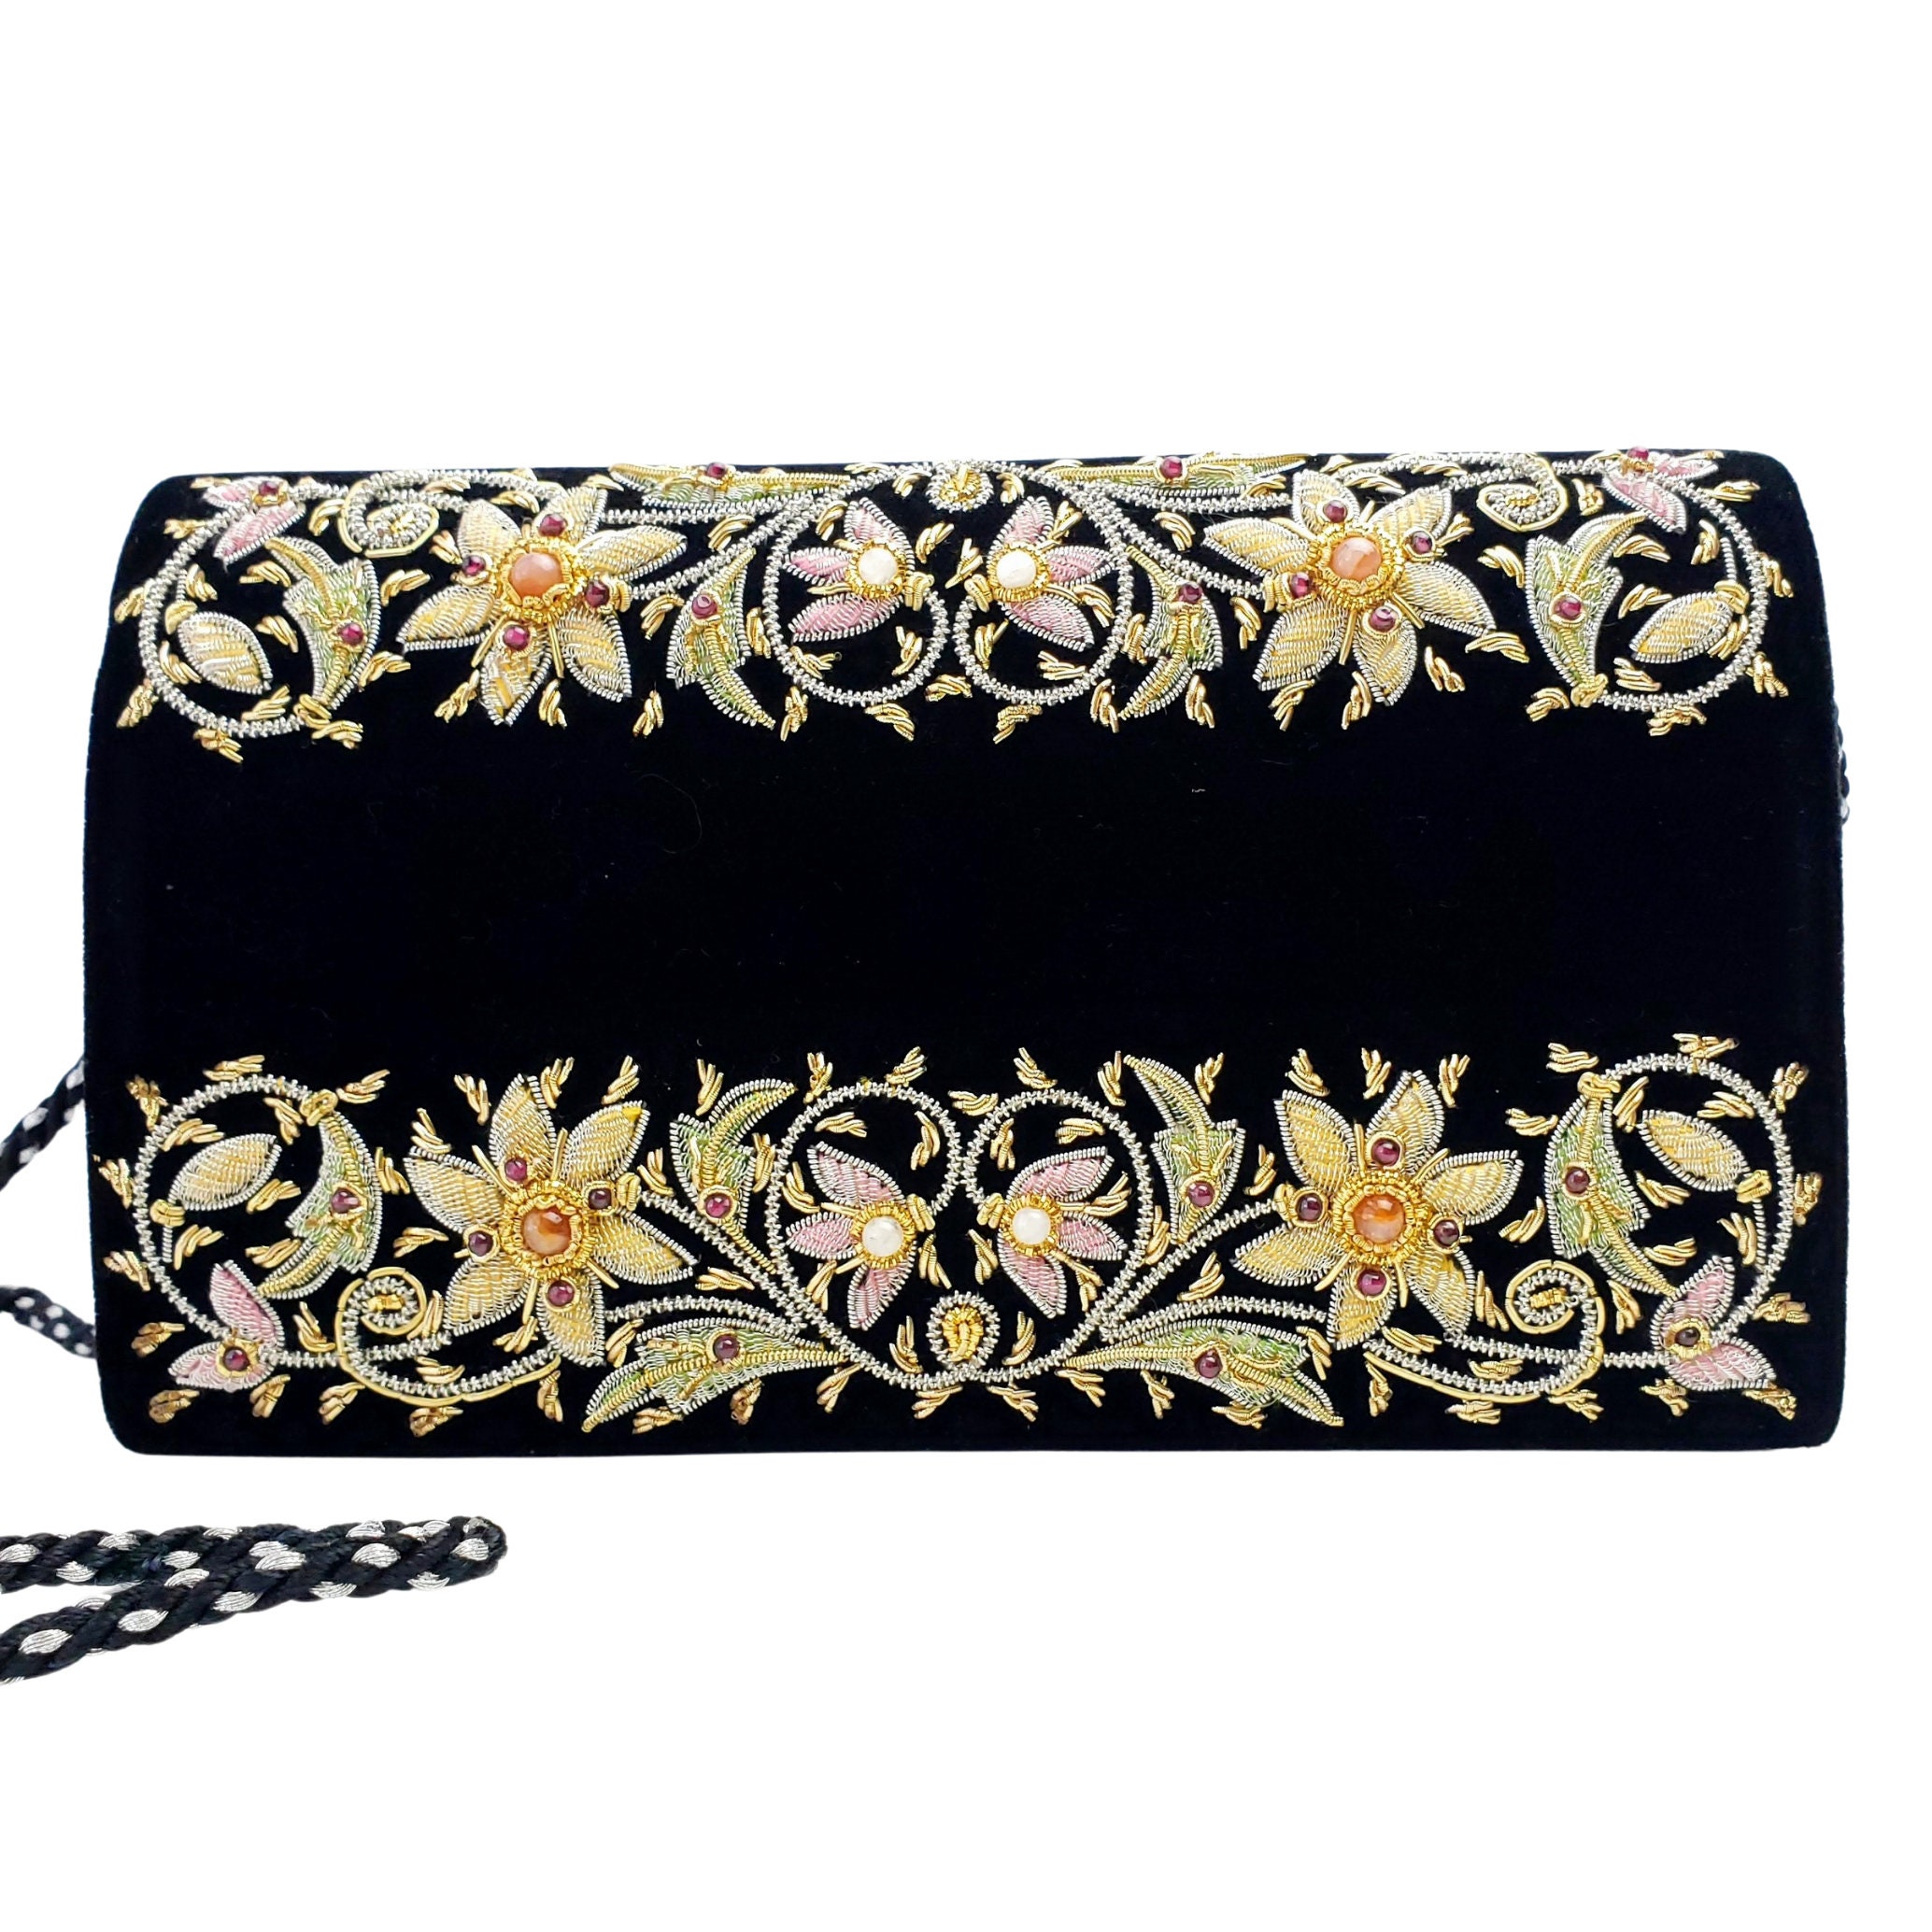 Hand embroidered floral clutch bag, black velvet evening bag with ...